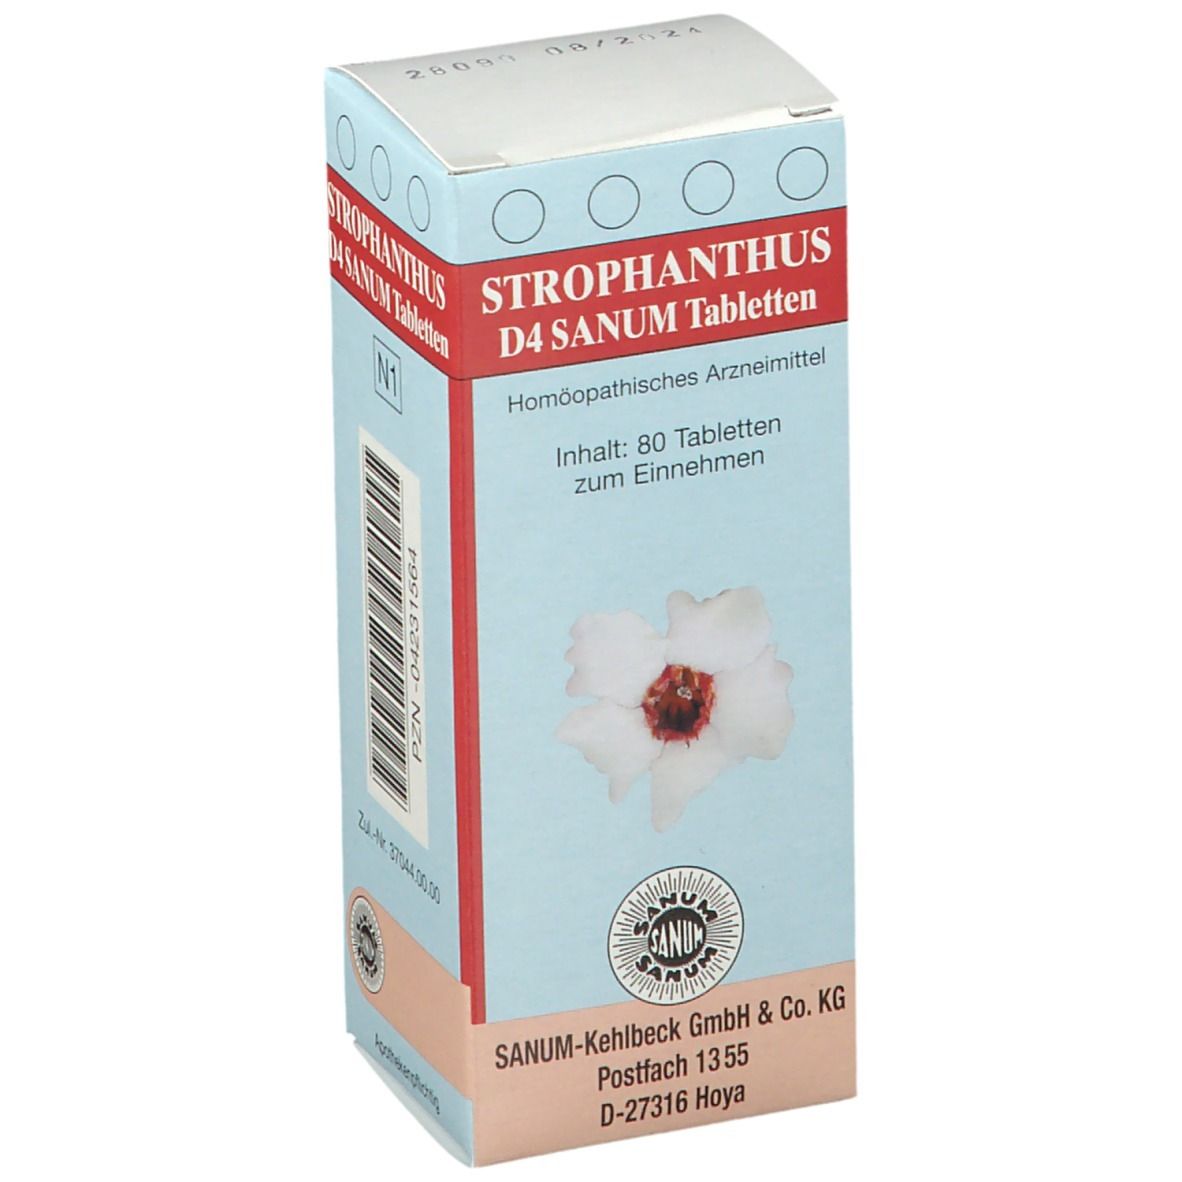 Strophanthus D4 Sanum Tabletten